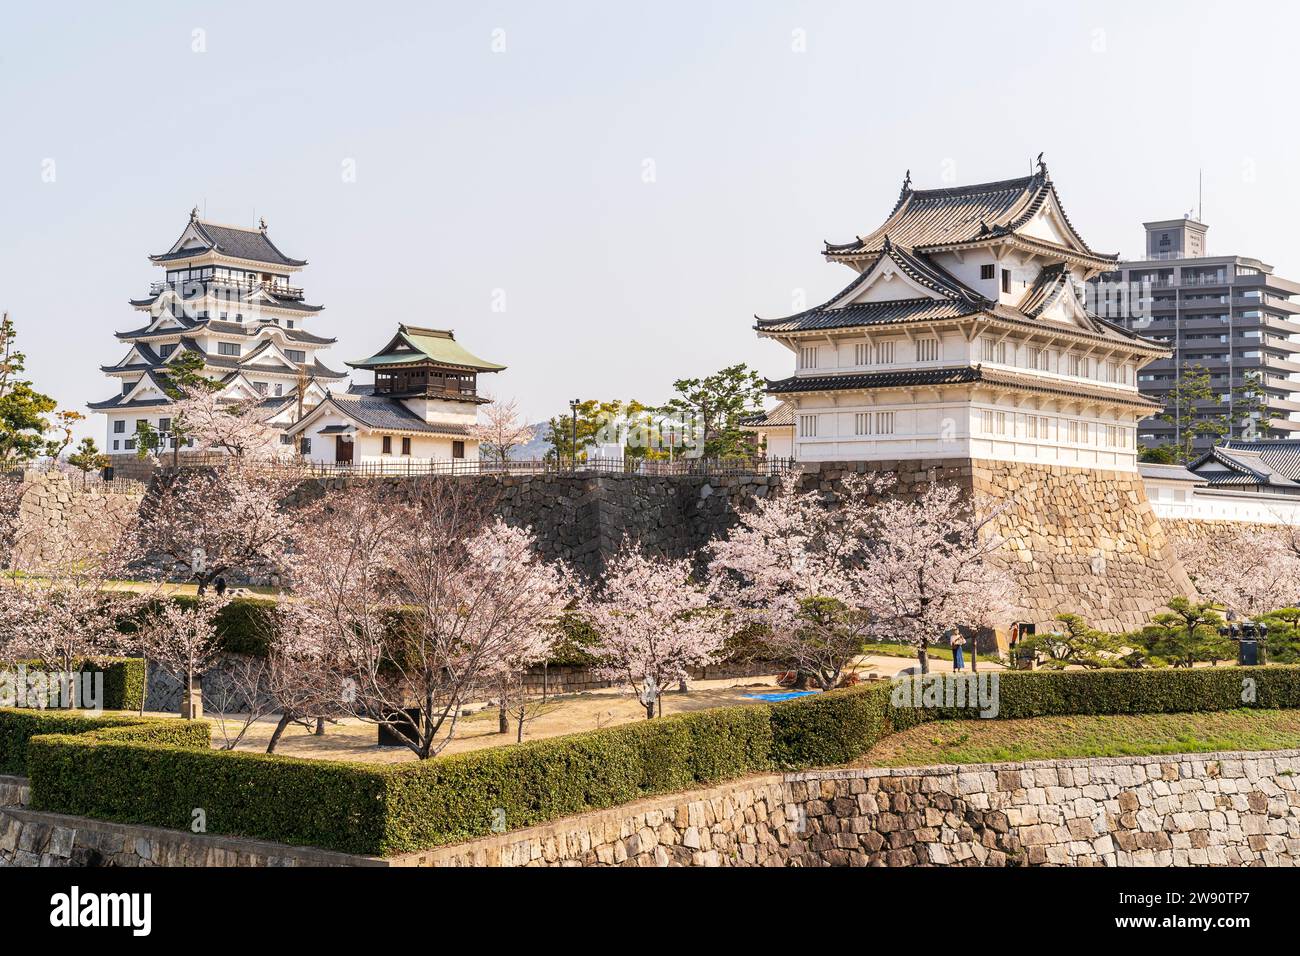 Château de Fukuyama, Japon. Murs de pierre Ishigaki, cerisiers en fleurs, le Fushimi yagura, tourelle, le Shorou, clocher et donjon du château blanc. Banque D'Images